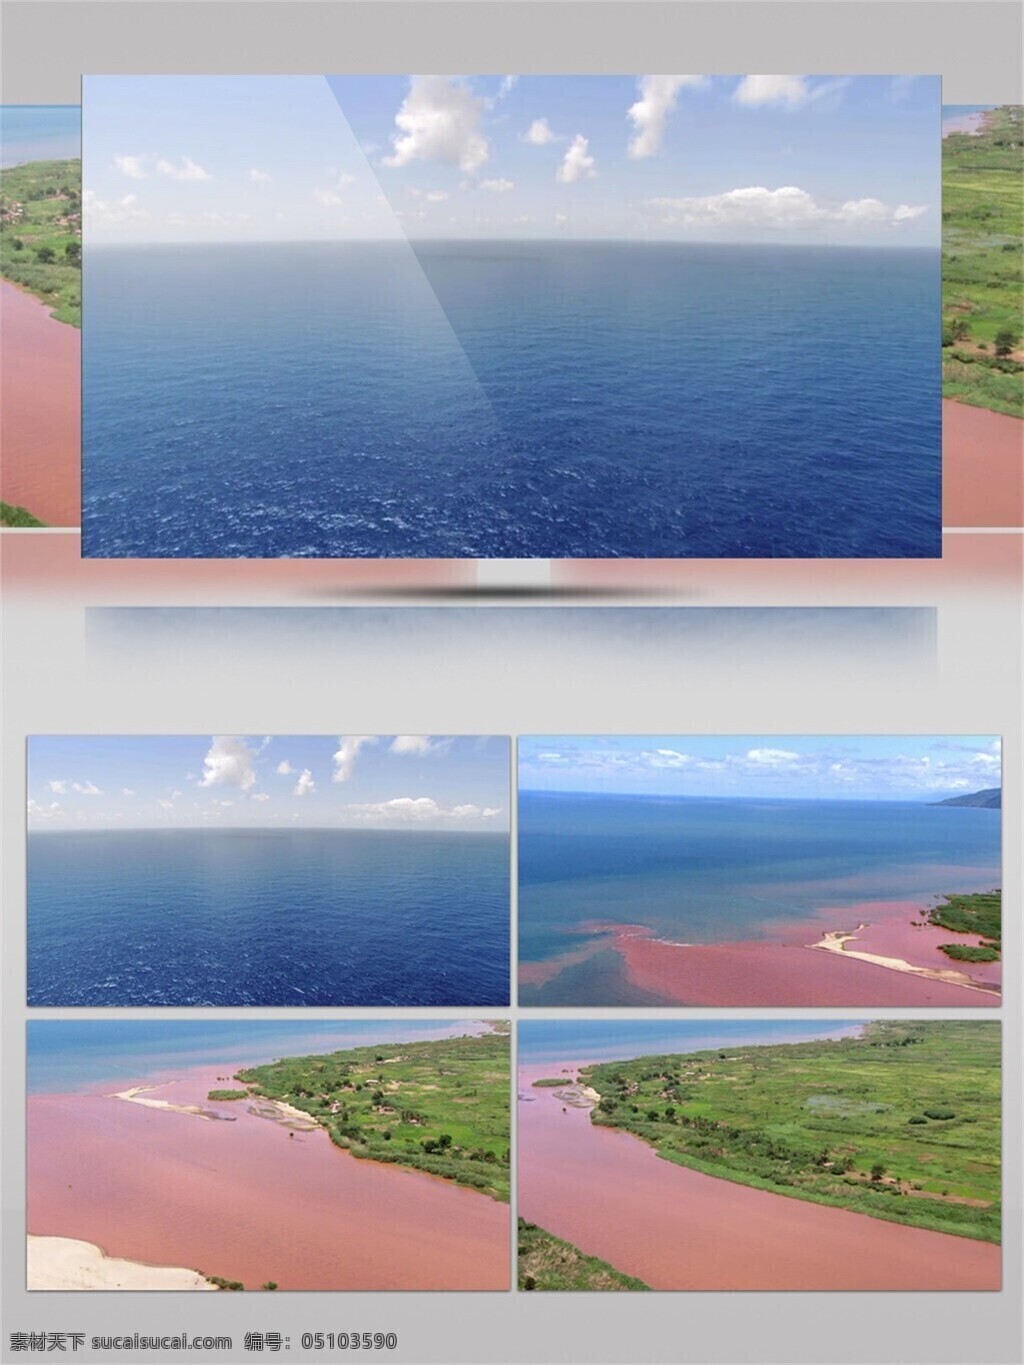 粉色 沙滩 美景 视频 音效 绿色 植物 海洋 蓝天 白云 阳光 视频素材 视频音效